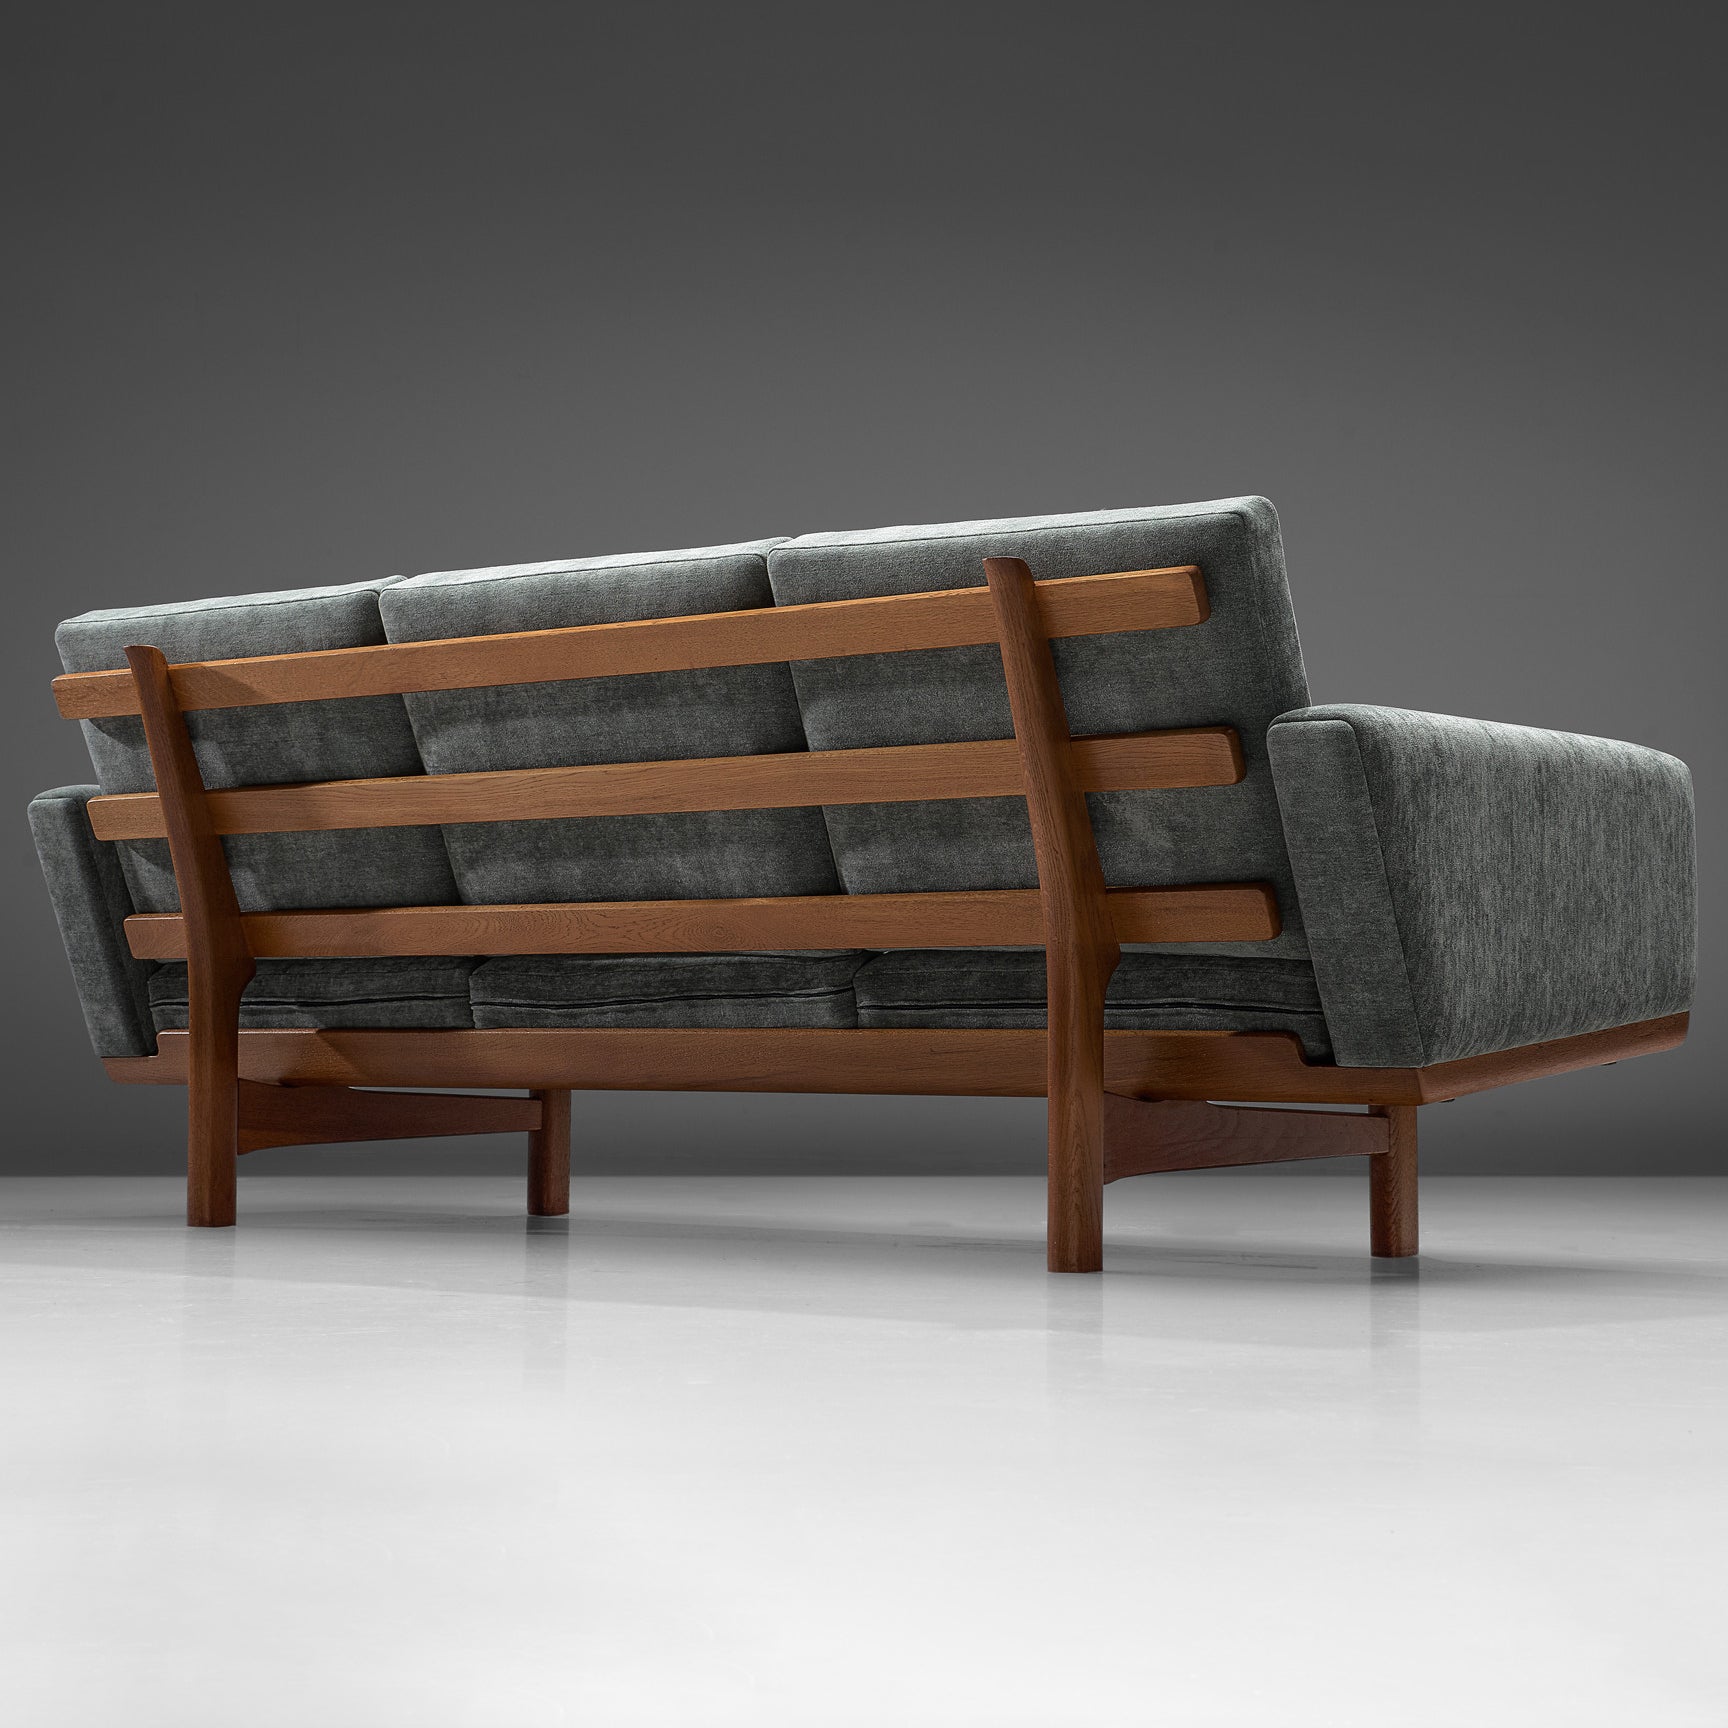 Hans J. Wegner, Dreisitziges Sofa Modell GE-236/3, Stoff und Eiche, Dänemark, 1950er Jahre

Schönes Sofa des dänischen Designers Hans J. Wegner. Dieses Sofa hat einen massiven Eichenrahmen, dessen Konstruktion an der Rückseite des Sofas sichtbar